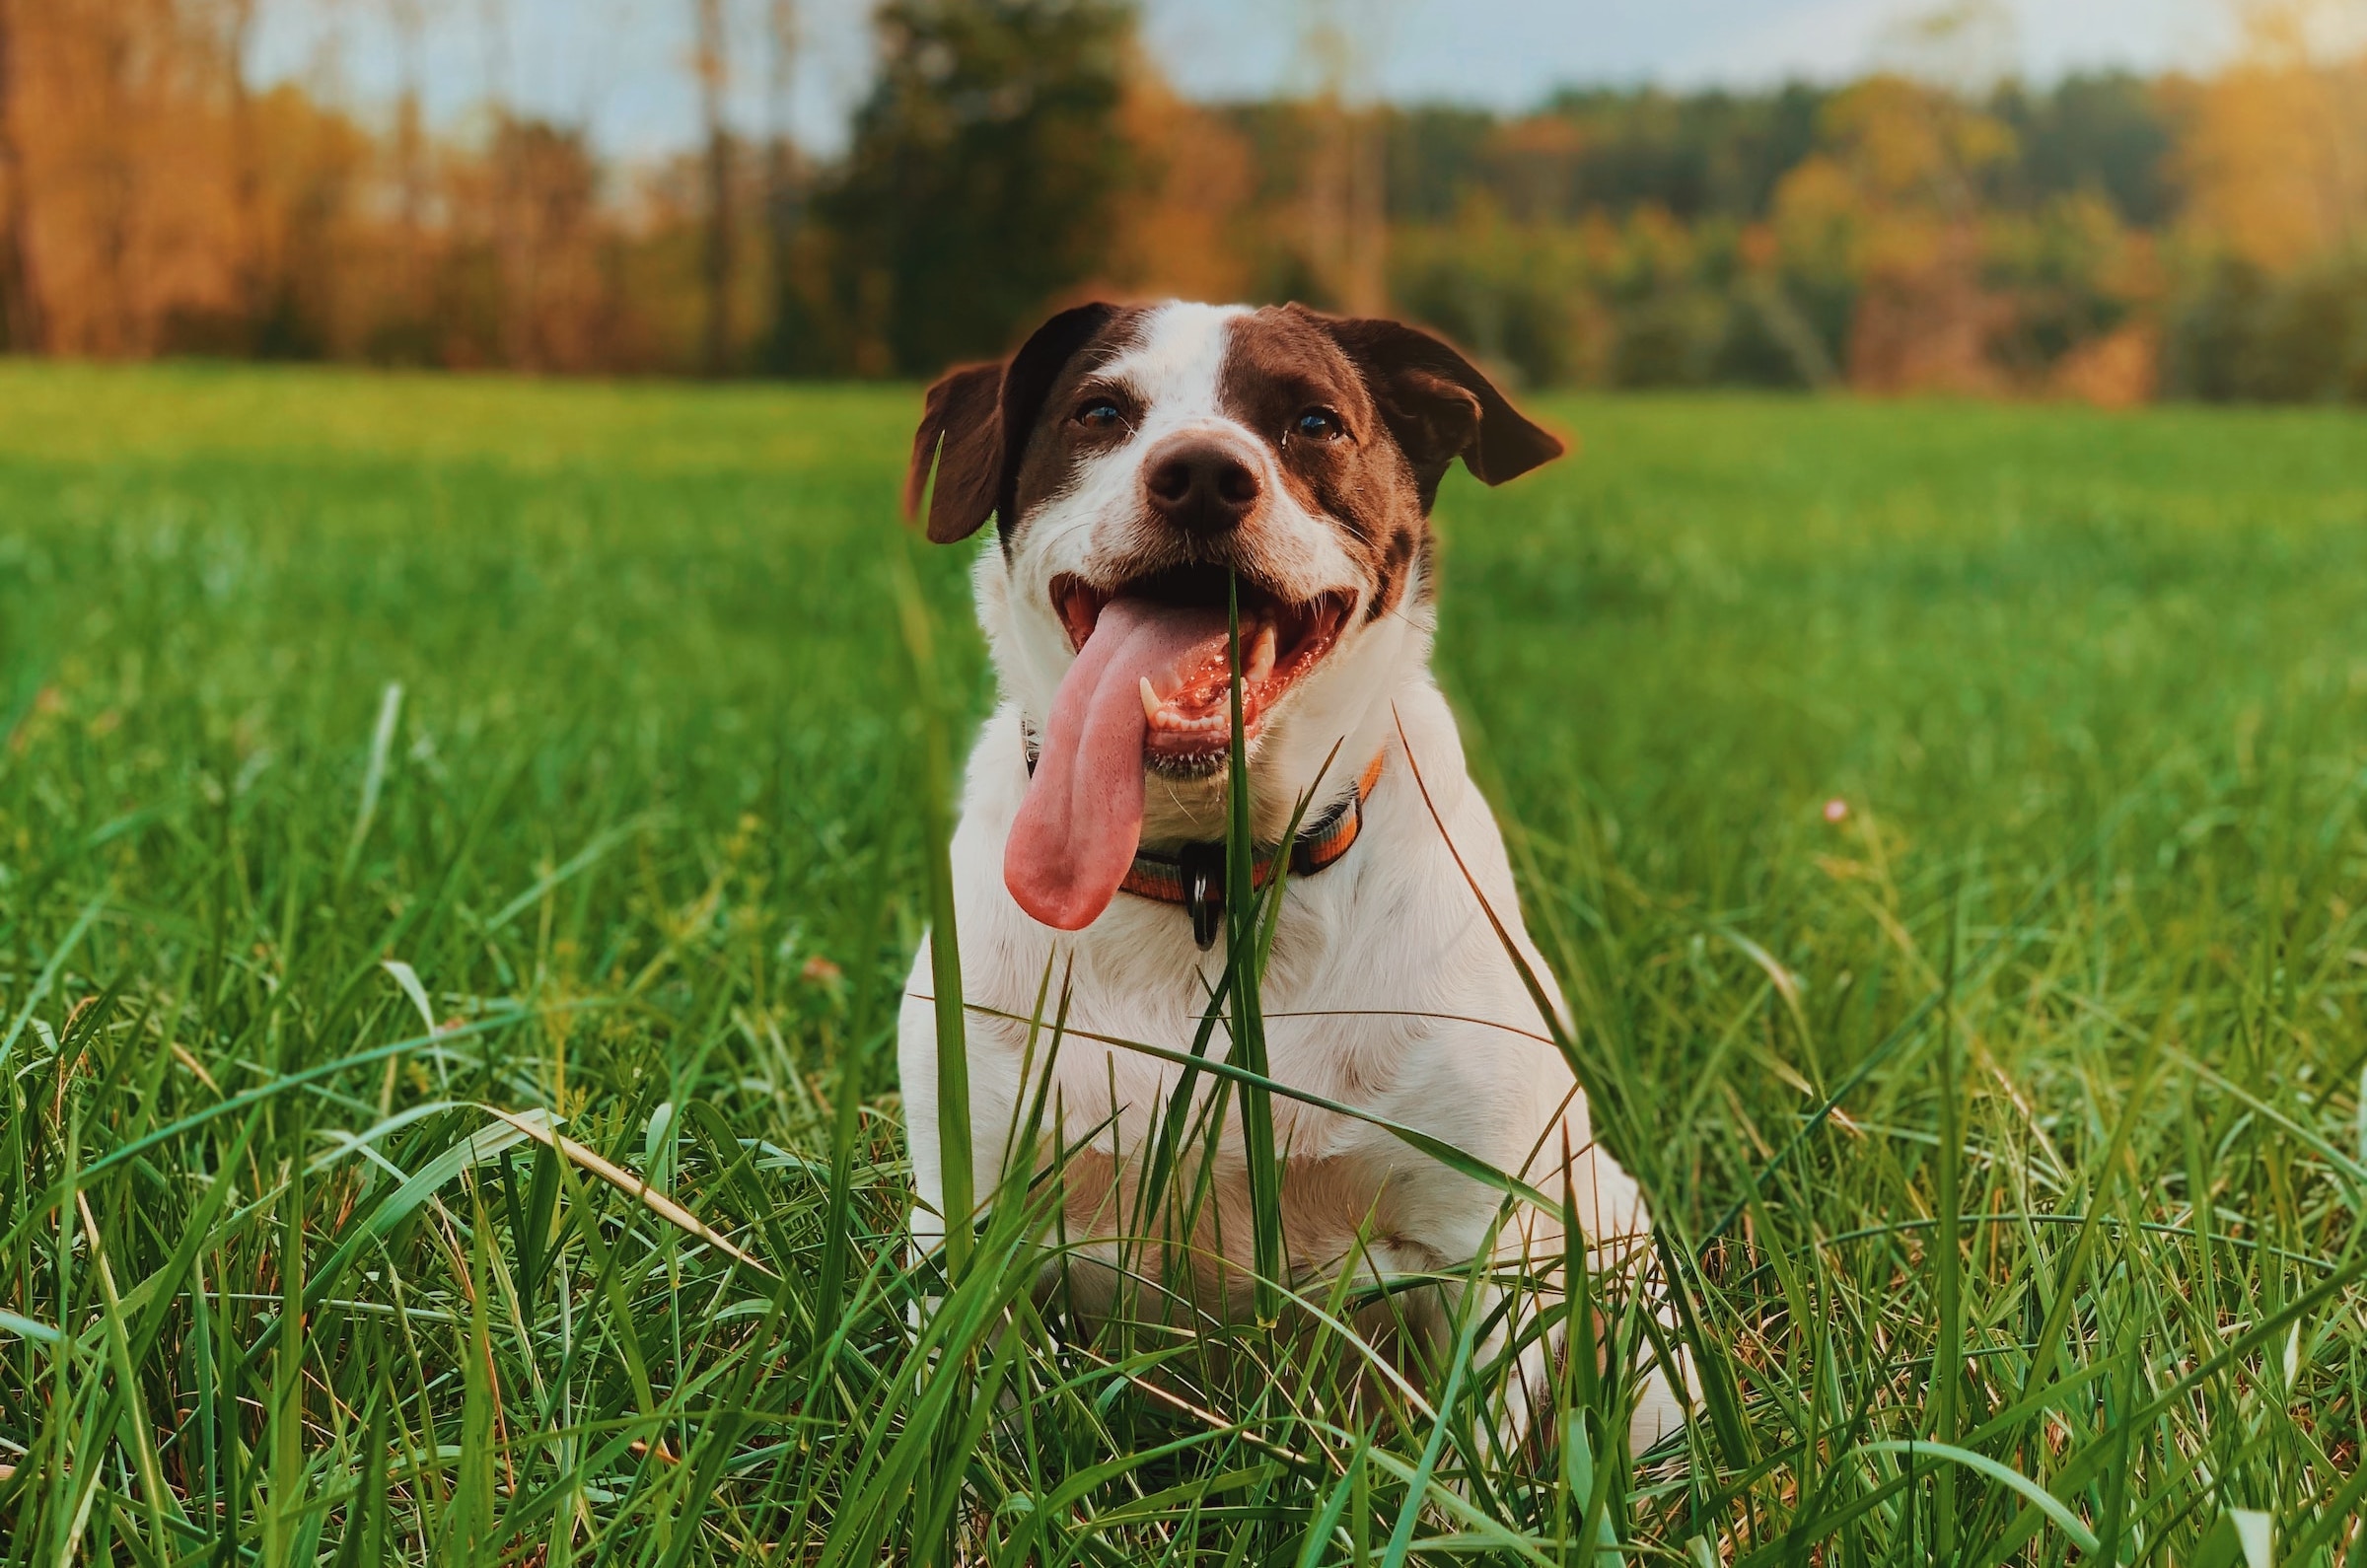 Pourquoi les chiens mangent-ils de l’herbe ? Voici les véritables raisons